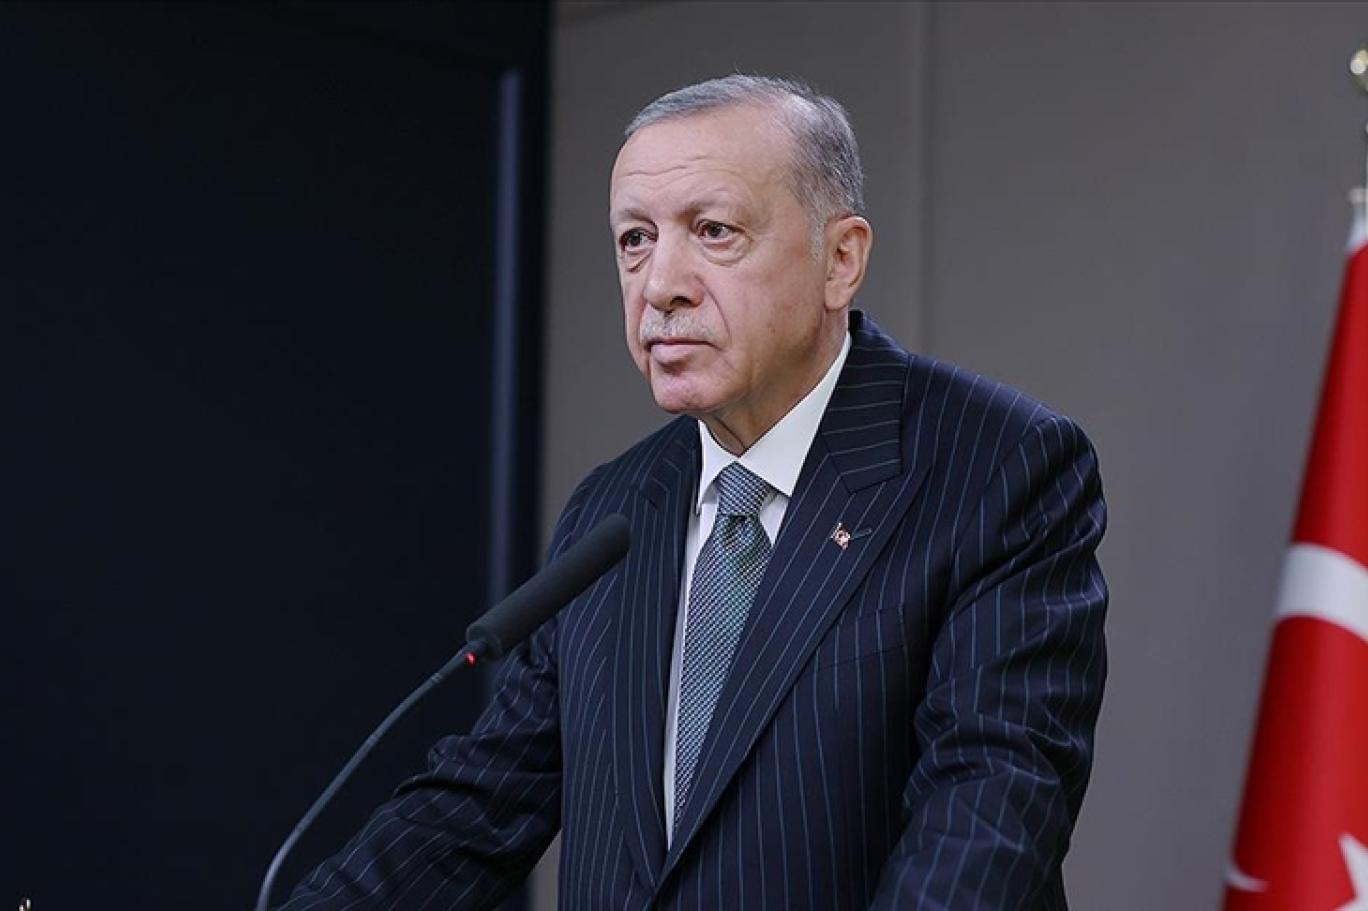 Cumhurbaşkanı Erdoğan'dan Emekliye Ek Ödem Müjdesi! 18 23 Ocak Tarihlerinde Bir Daha Ek Ödeme Yapılacak